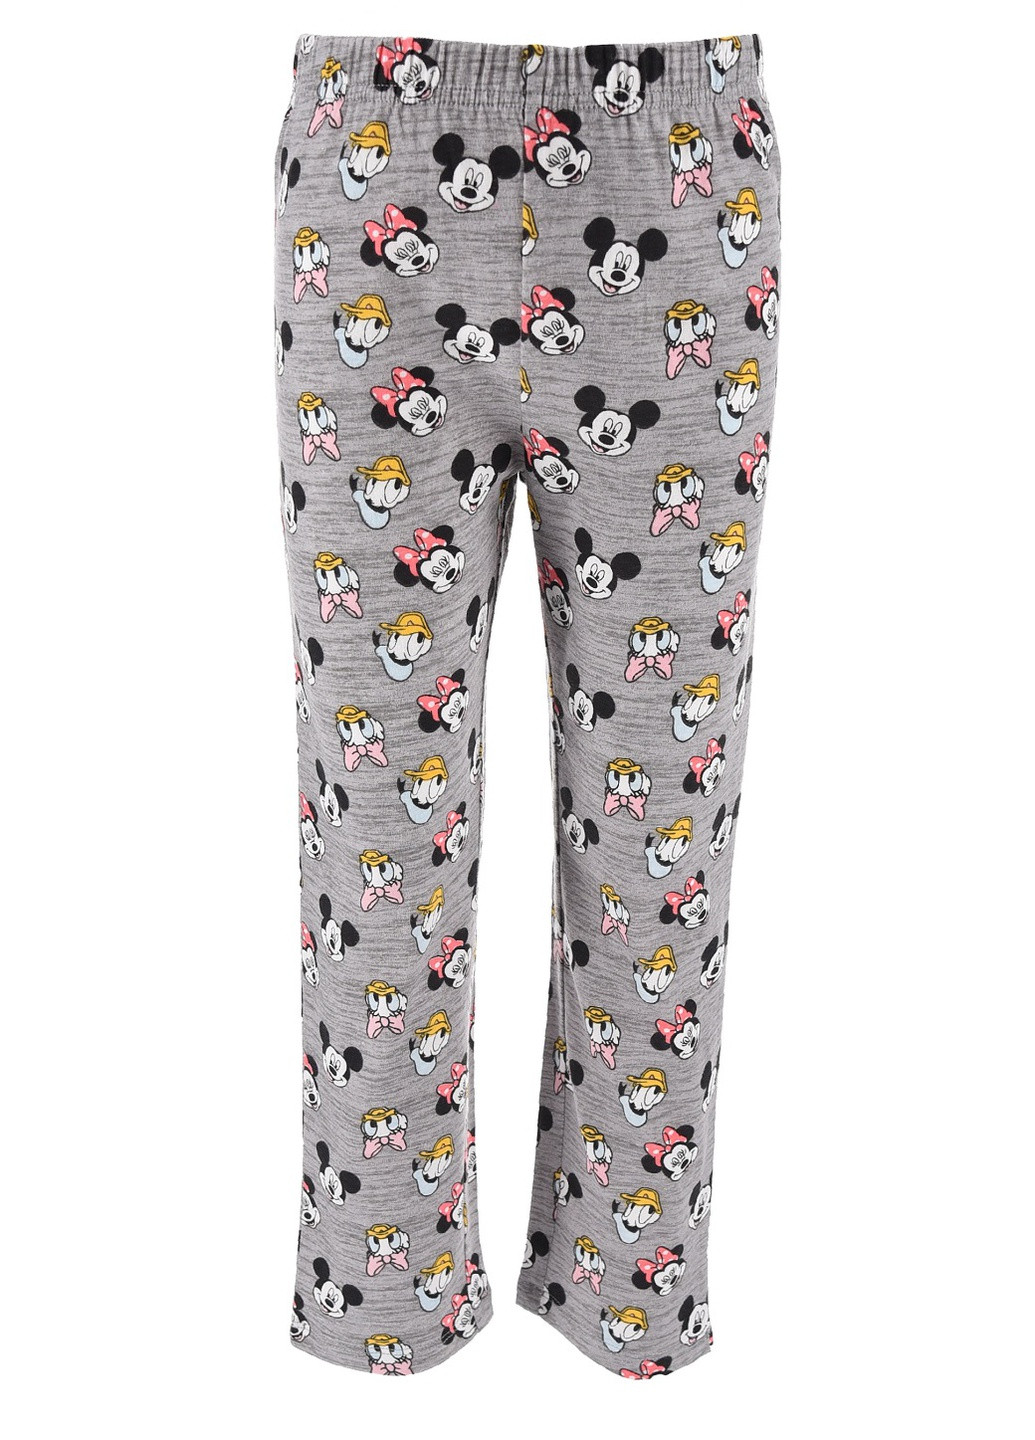 Комбинированная всесезон пижама лонгслив + брюки Disney